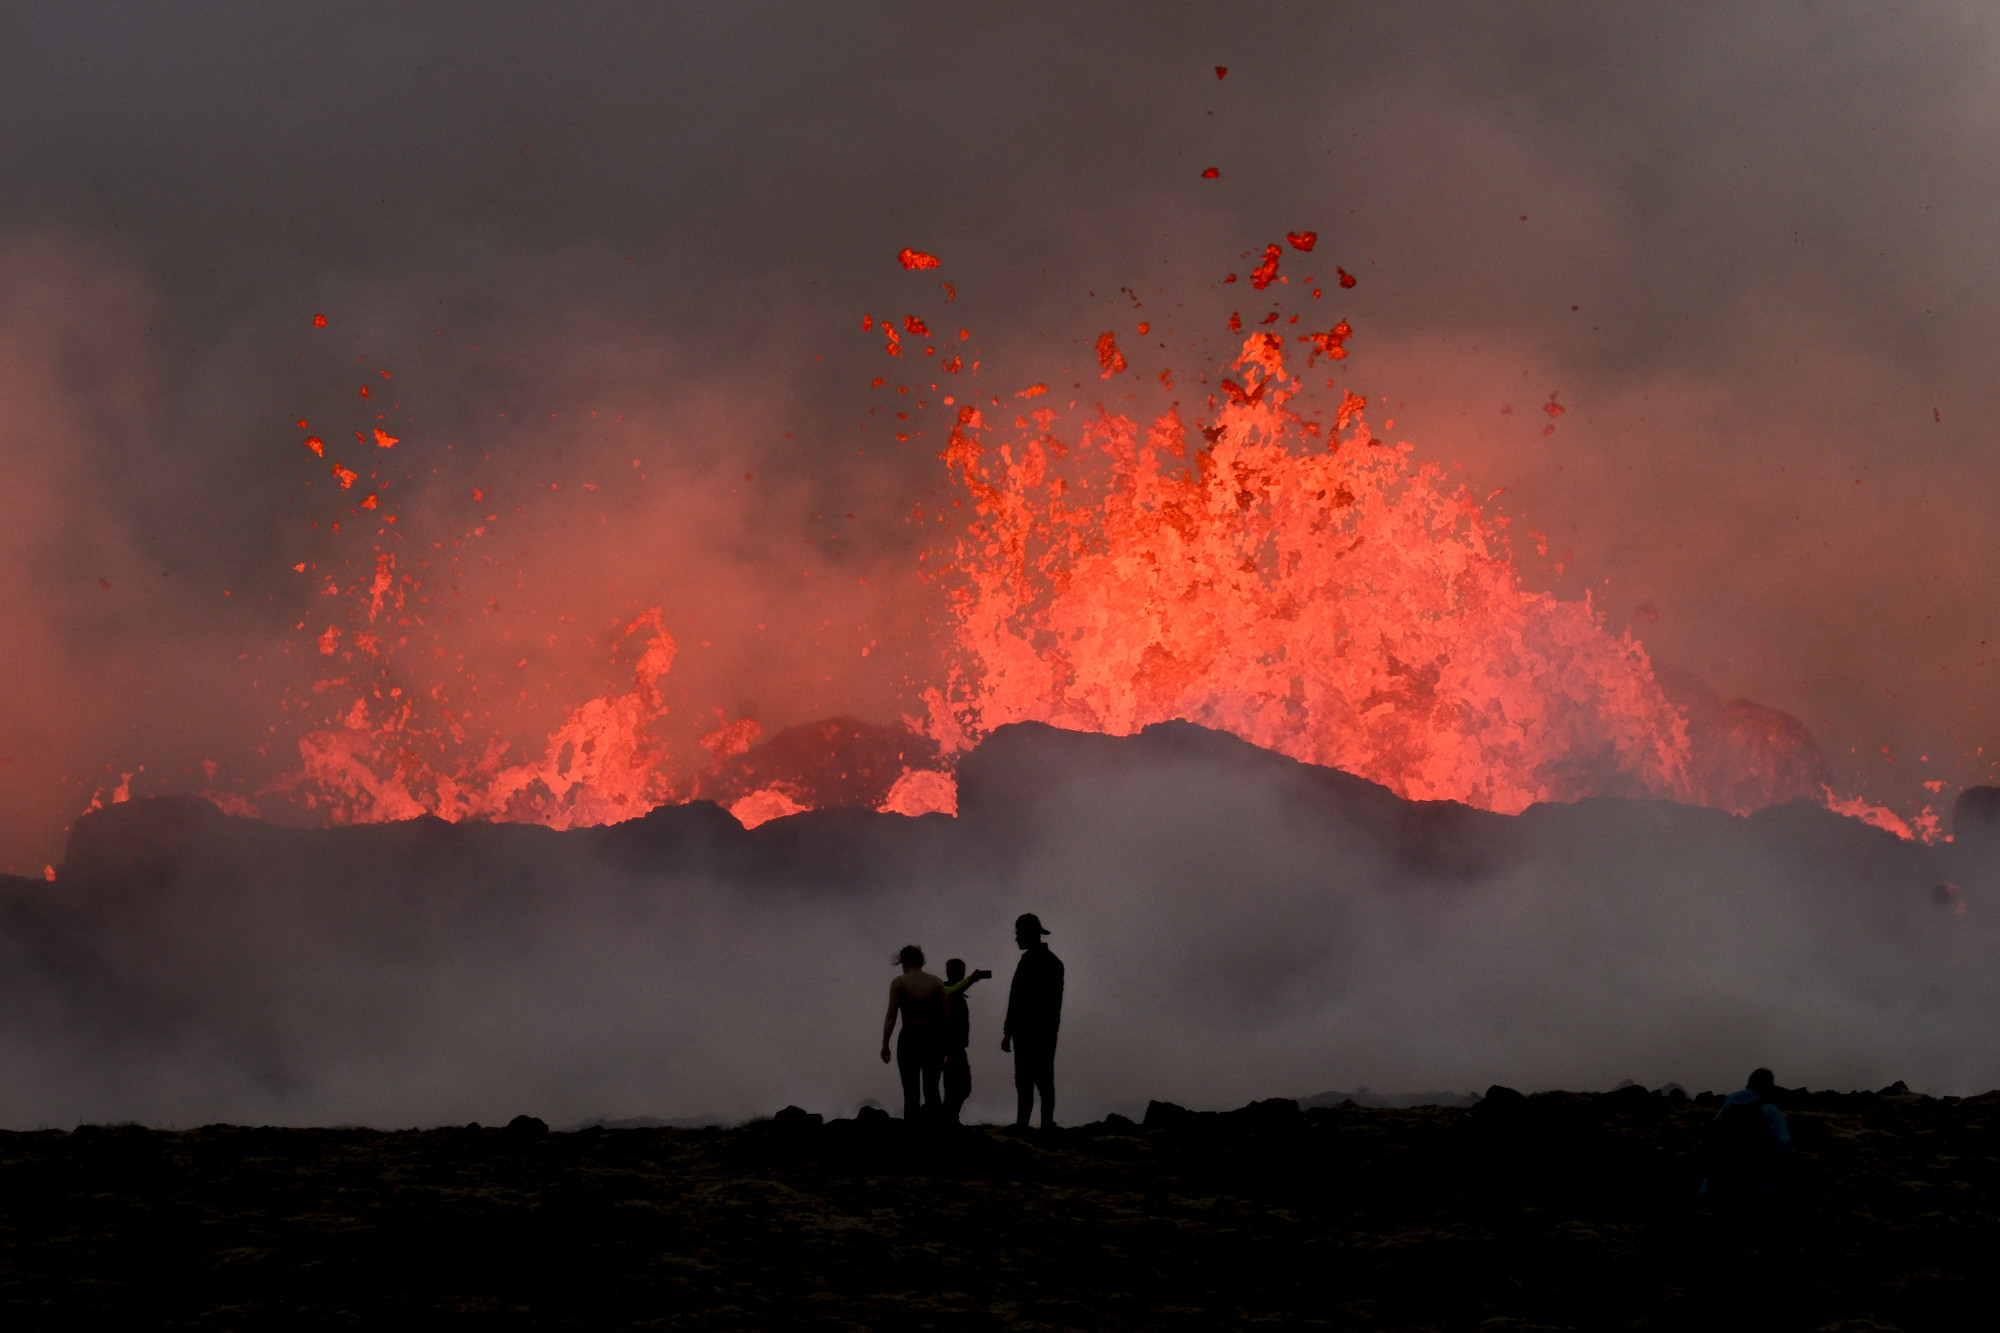 Emlékeznek a 2010-es nagy izlandi vulkánkitörésre? Na, most megint kitört egy